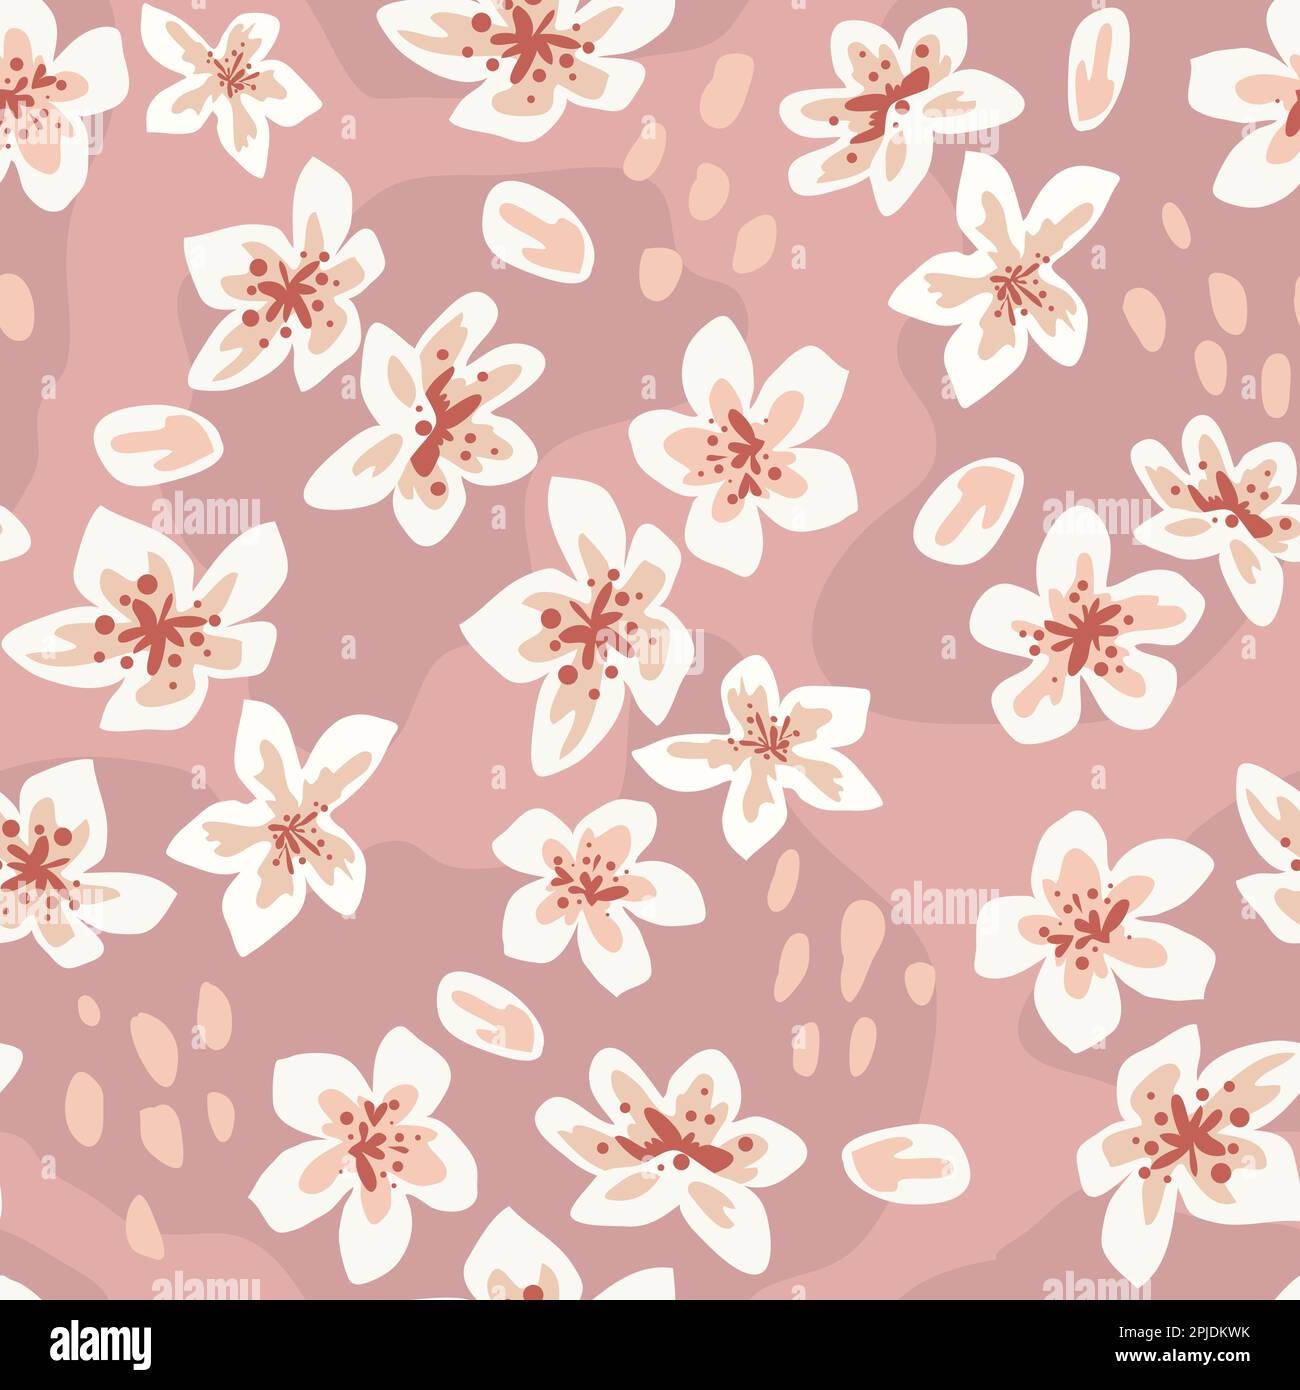 Süße Sakura-Blüte, japanisches Muster. Rosafarbene japanische Kirsche, herabfallende Frühlingsblumen, Naturfloraldruck, Notizbuchdekoration. Textildekor, Geschenkpapier, Tapetendesign. Nahtloser Vektorhintergrund Stock Vektor